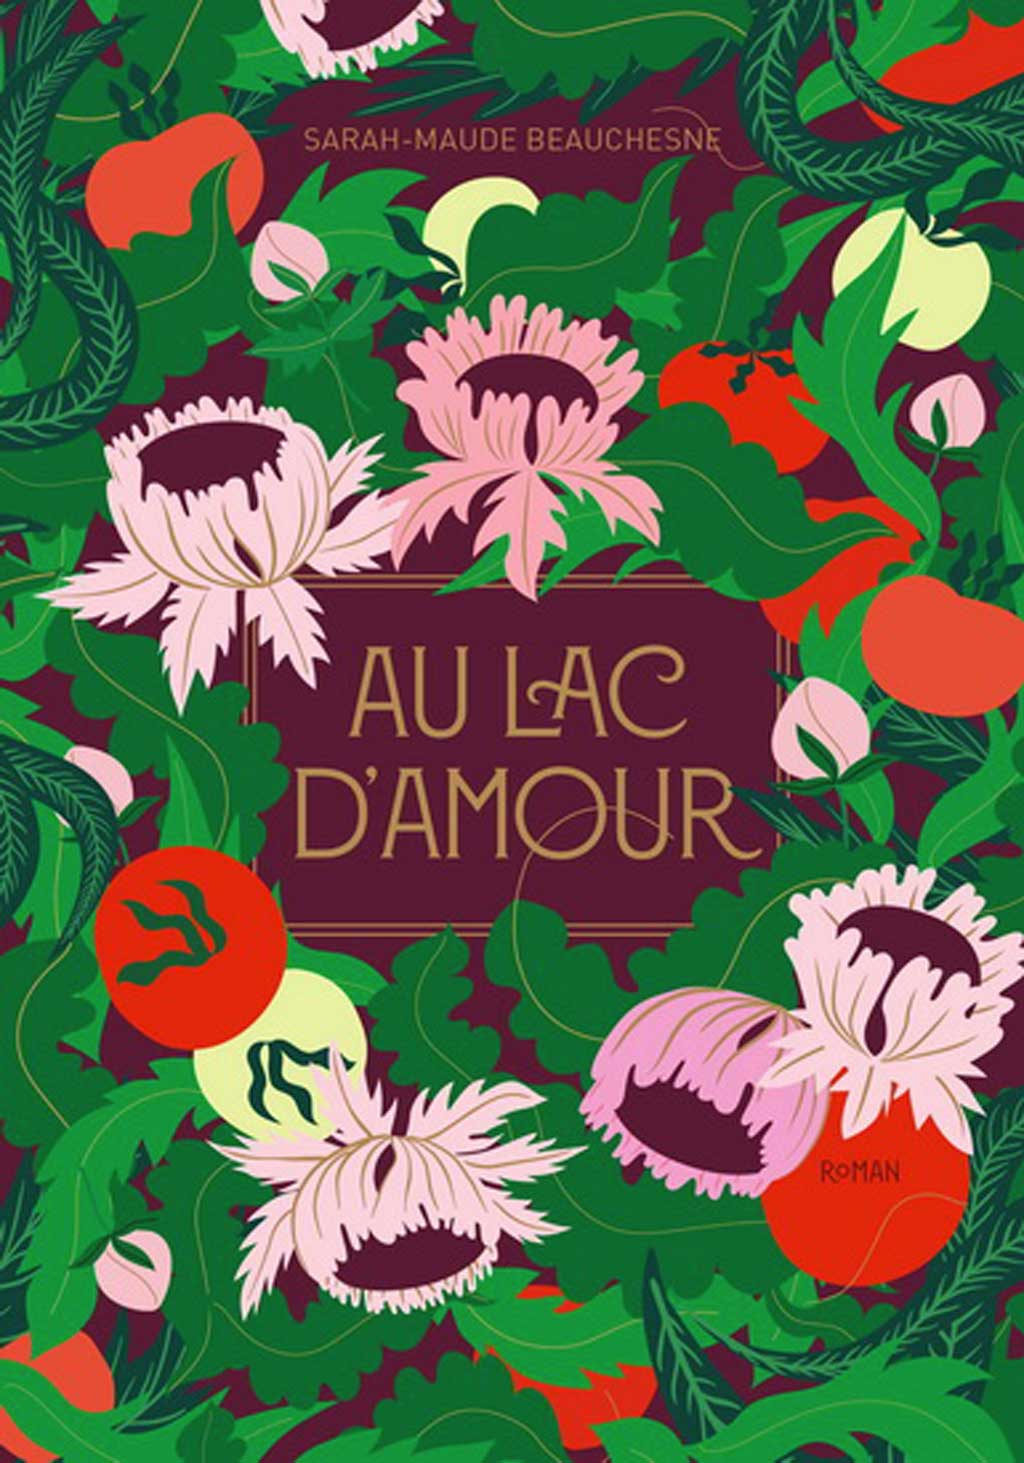 L'image de couverture du roman Au lac d'Amour de Sarah-Maude Beauchesne.